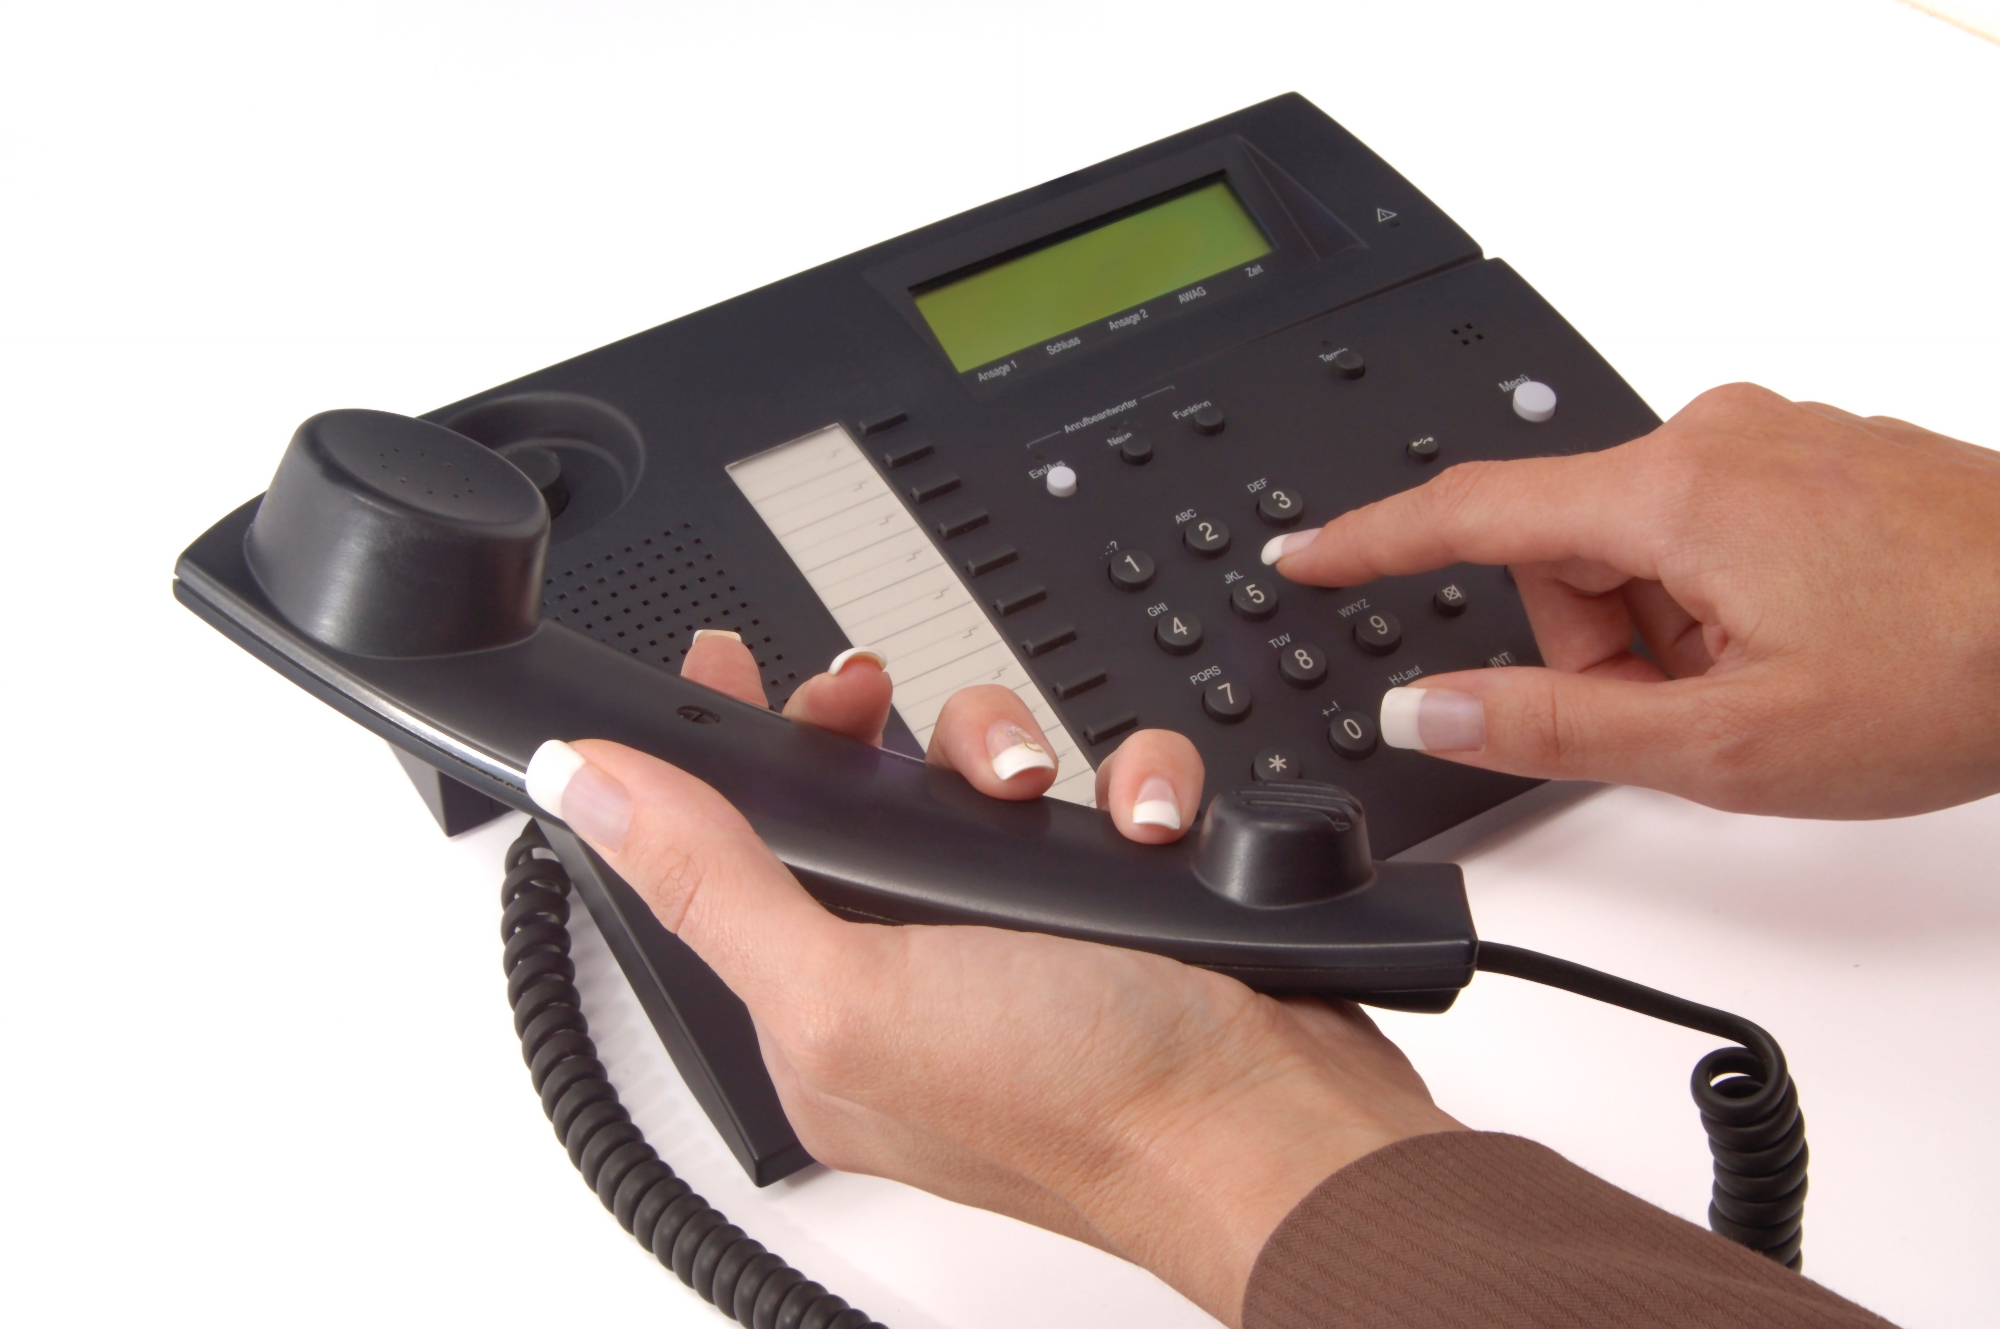 Telefonska centrala je lahko ključna za podjetje